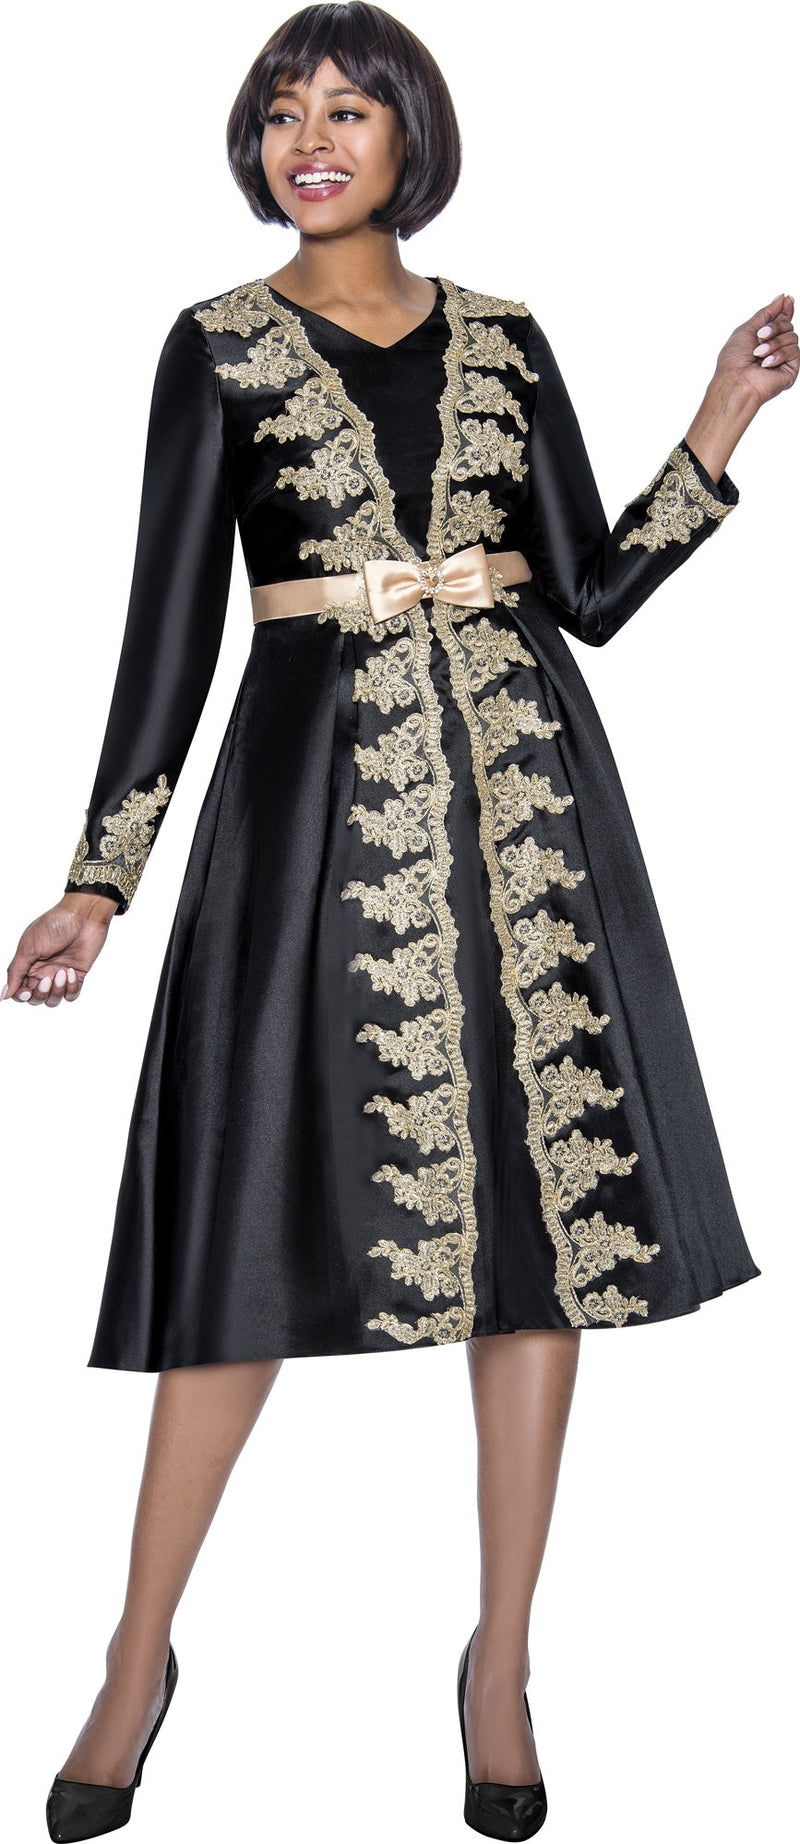 Terramina Church Dress 7927-Black - Church Suits For Less